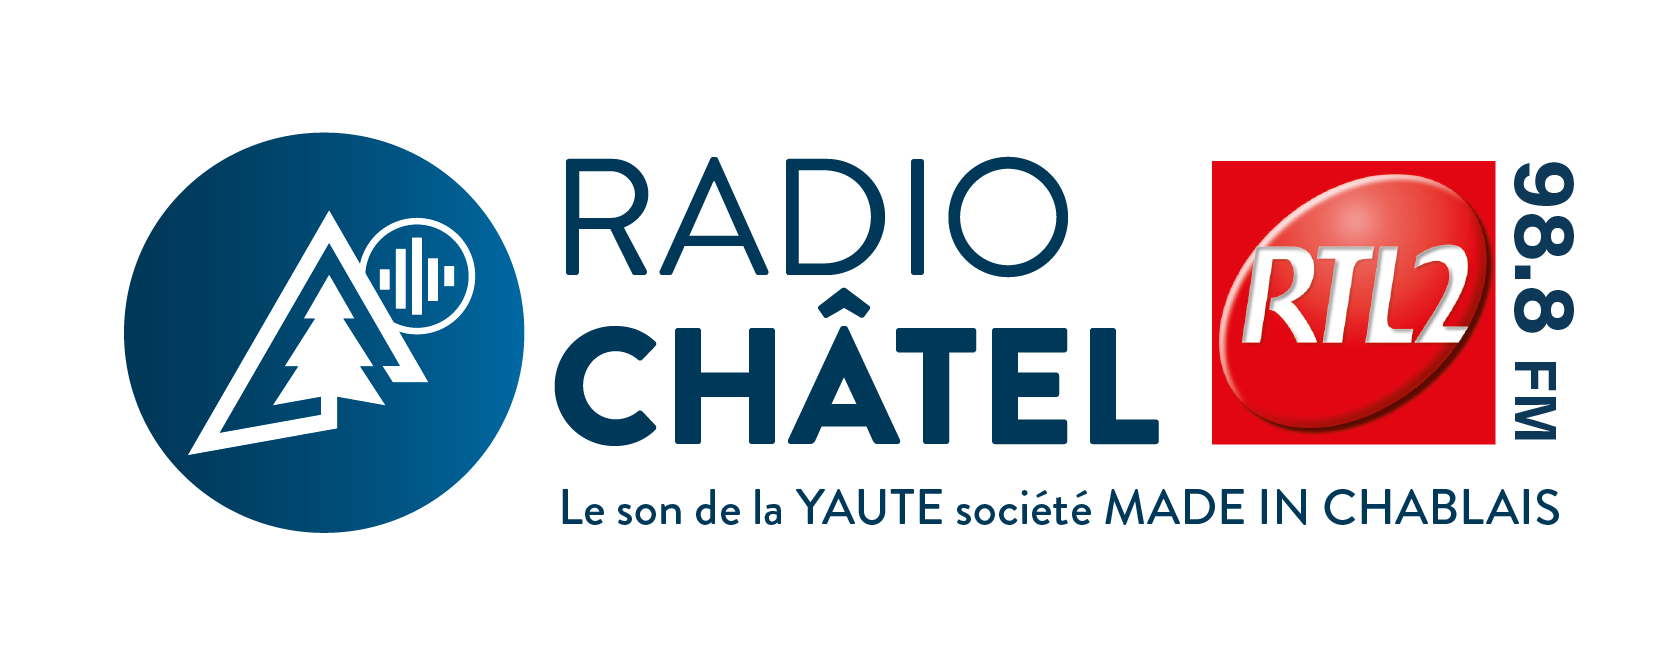 Radio Châtel RTL2